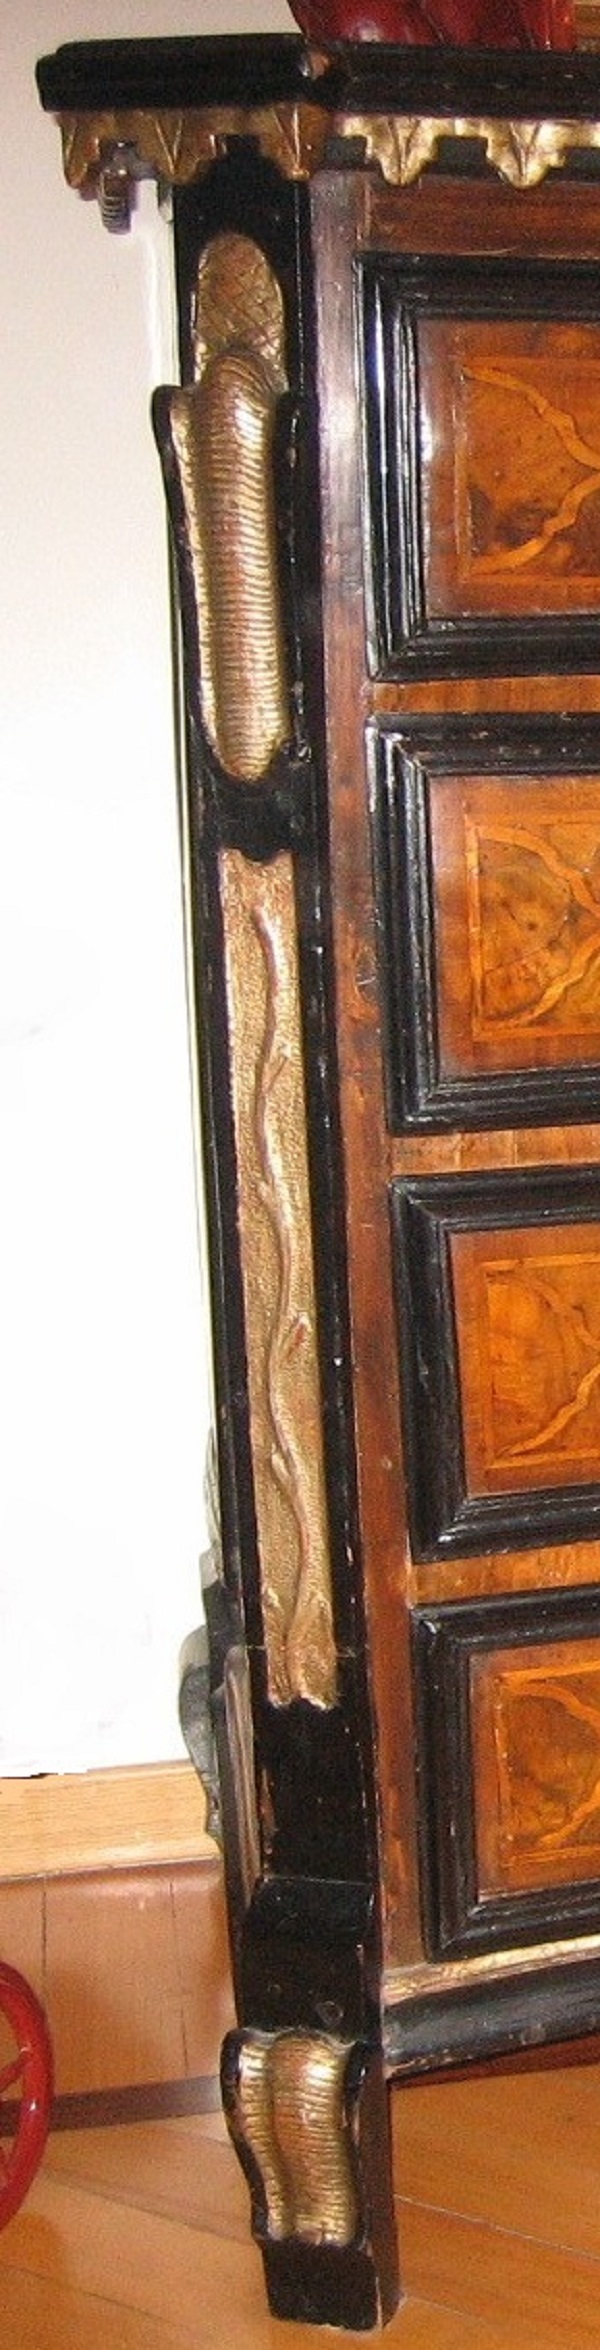 cassettone-lambrecchini-lombardo-prima-metà-xviii-secolo